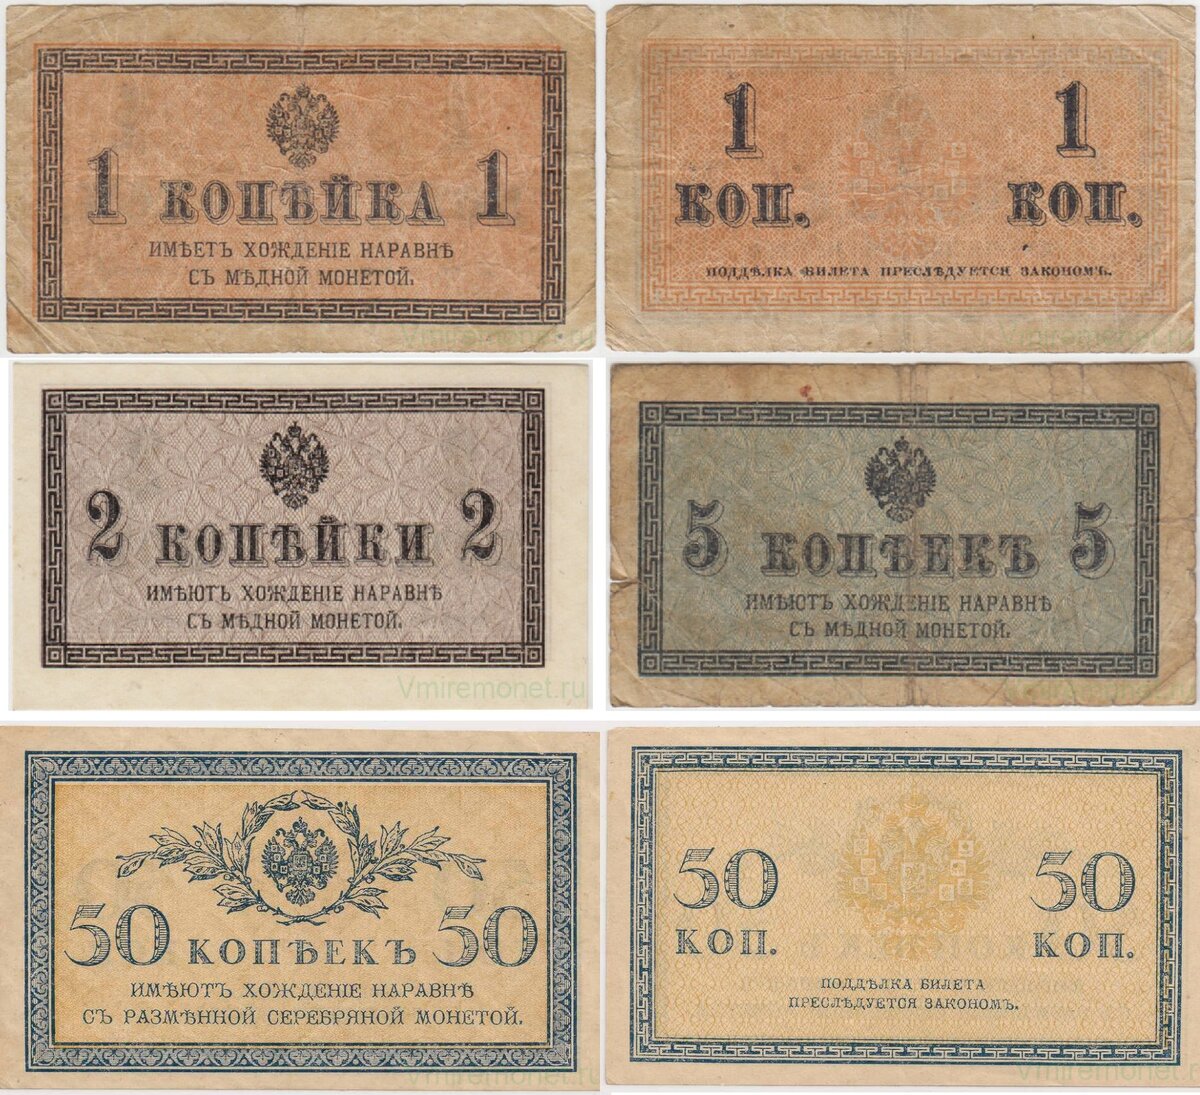 Банкноты 1, 2, 5, 50 копеек 1915-1917 гг.